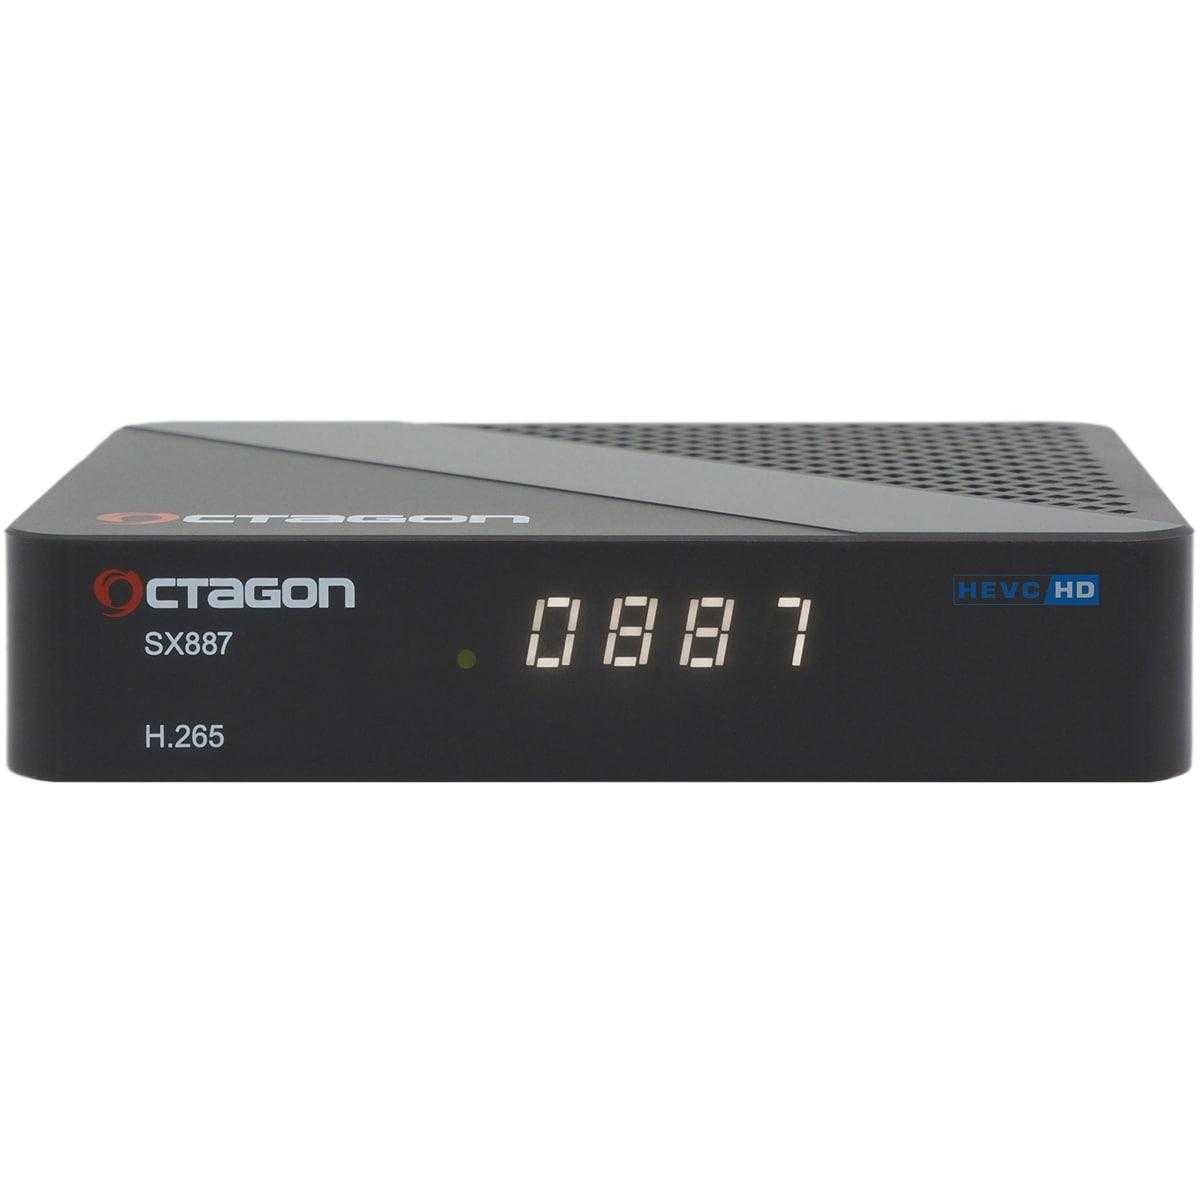 OCTAGON SX887 Full HD Linux IP-Receiver (1080p H.265 LAN HDMI IP-Mediaplayer schwarz) von Octagon